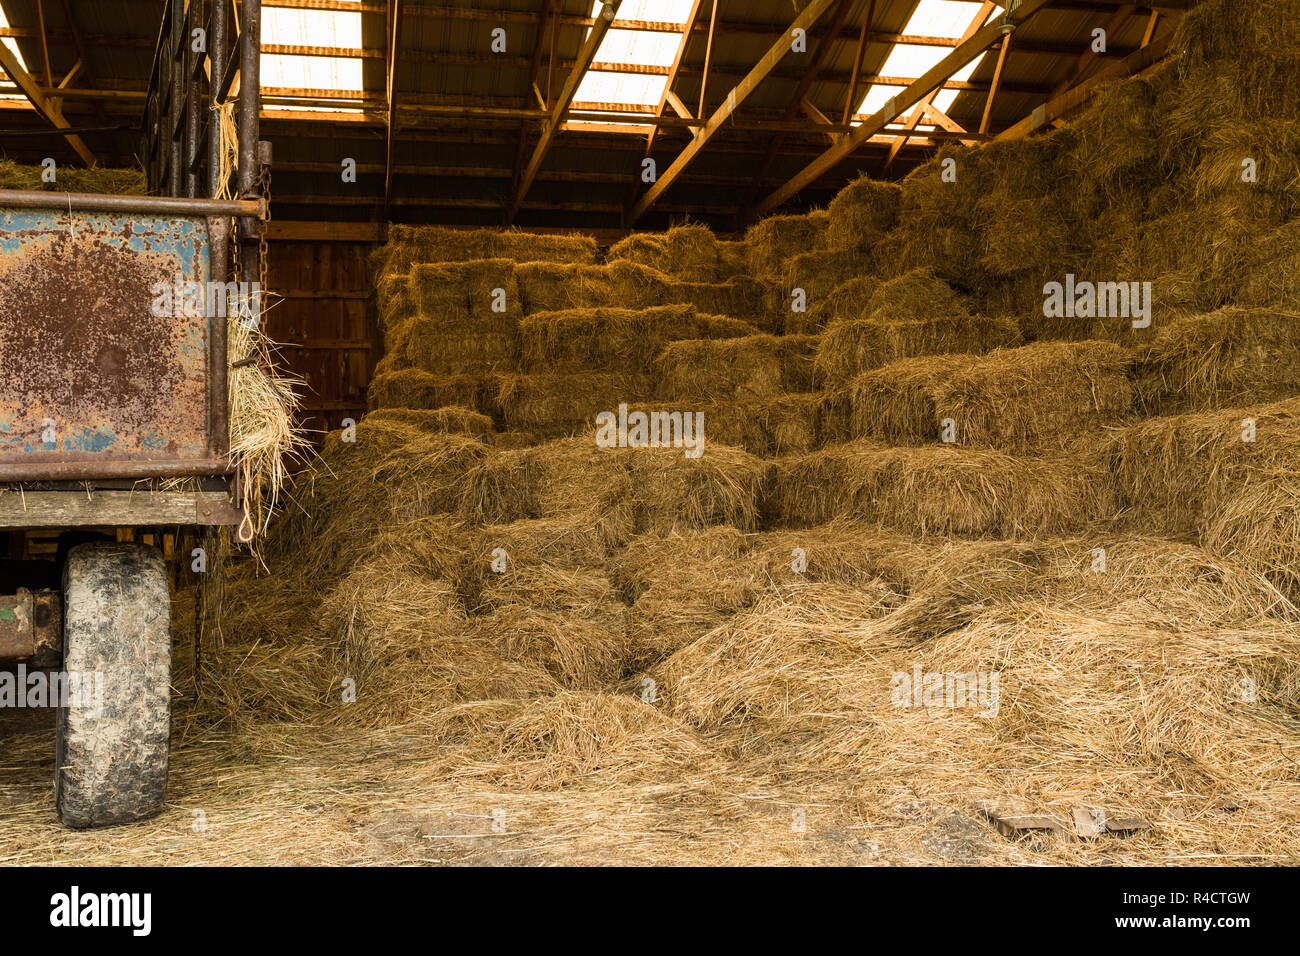 Des balles de foin pour l'alimentation animale empilés dans une grange Banque D'Images